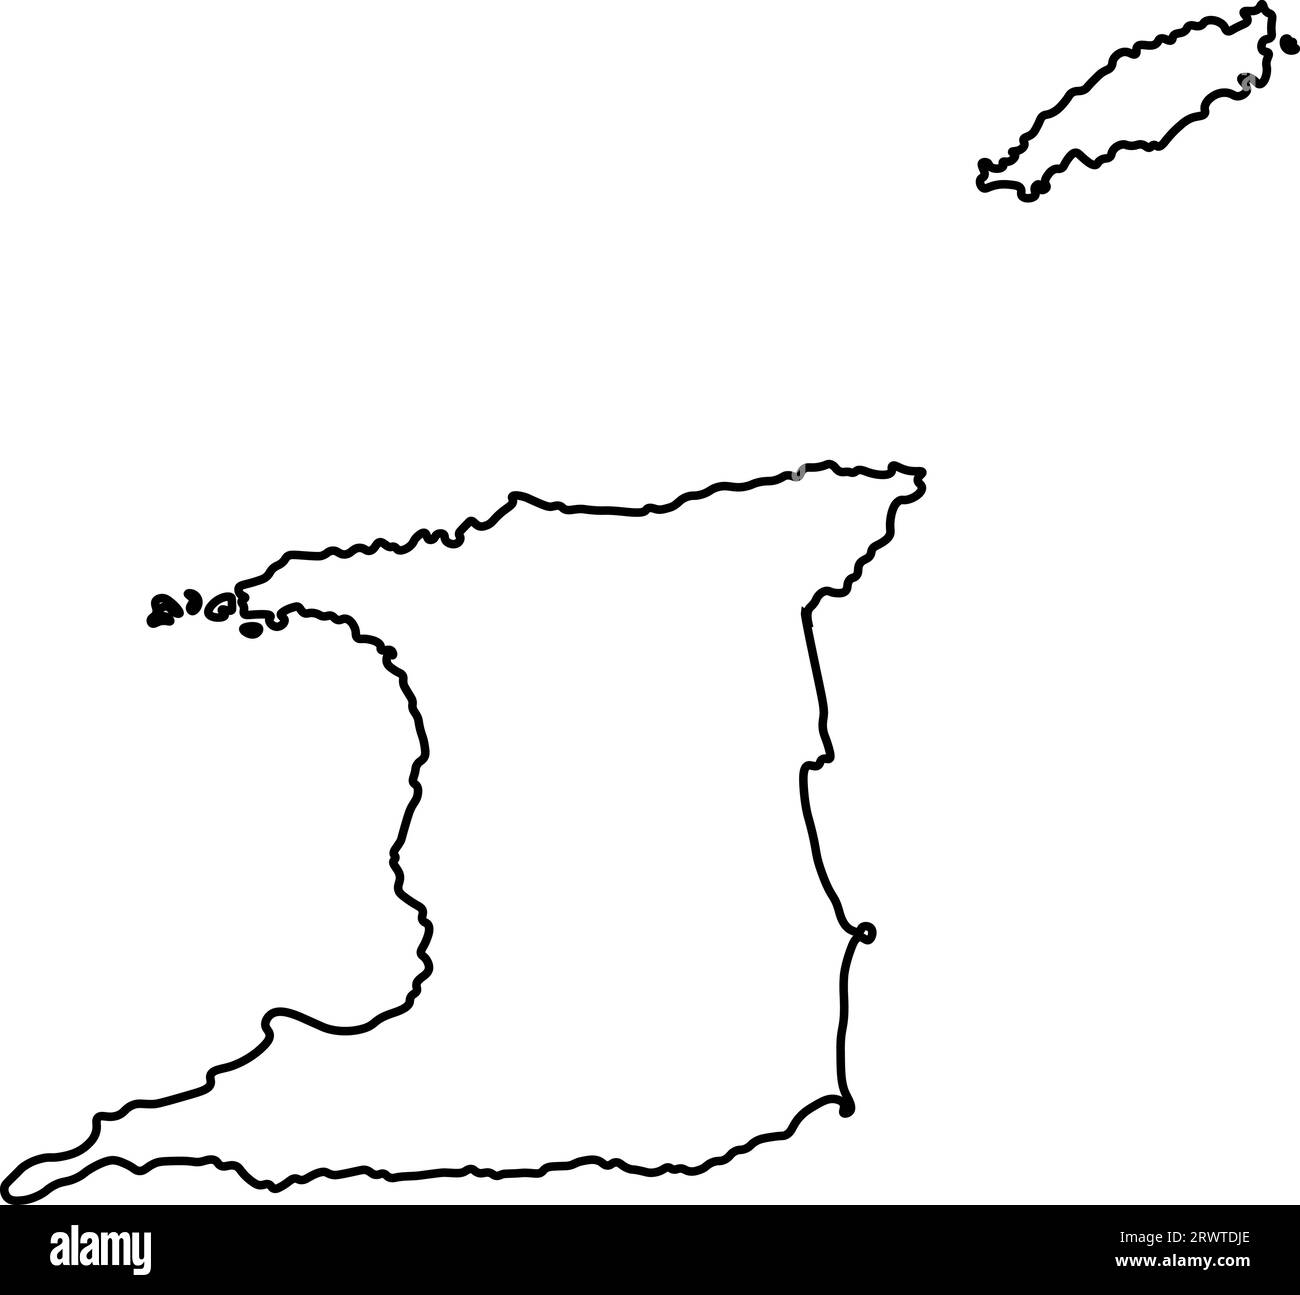 Vektor isolierte Illustration Symbol mit schwarzer Linie Silhouette der vereinfachten Karte von Trinidad und Tobago. Stock Vektor